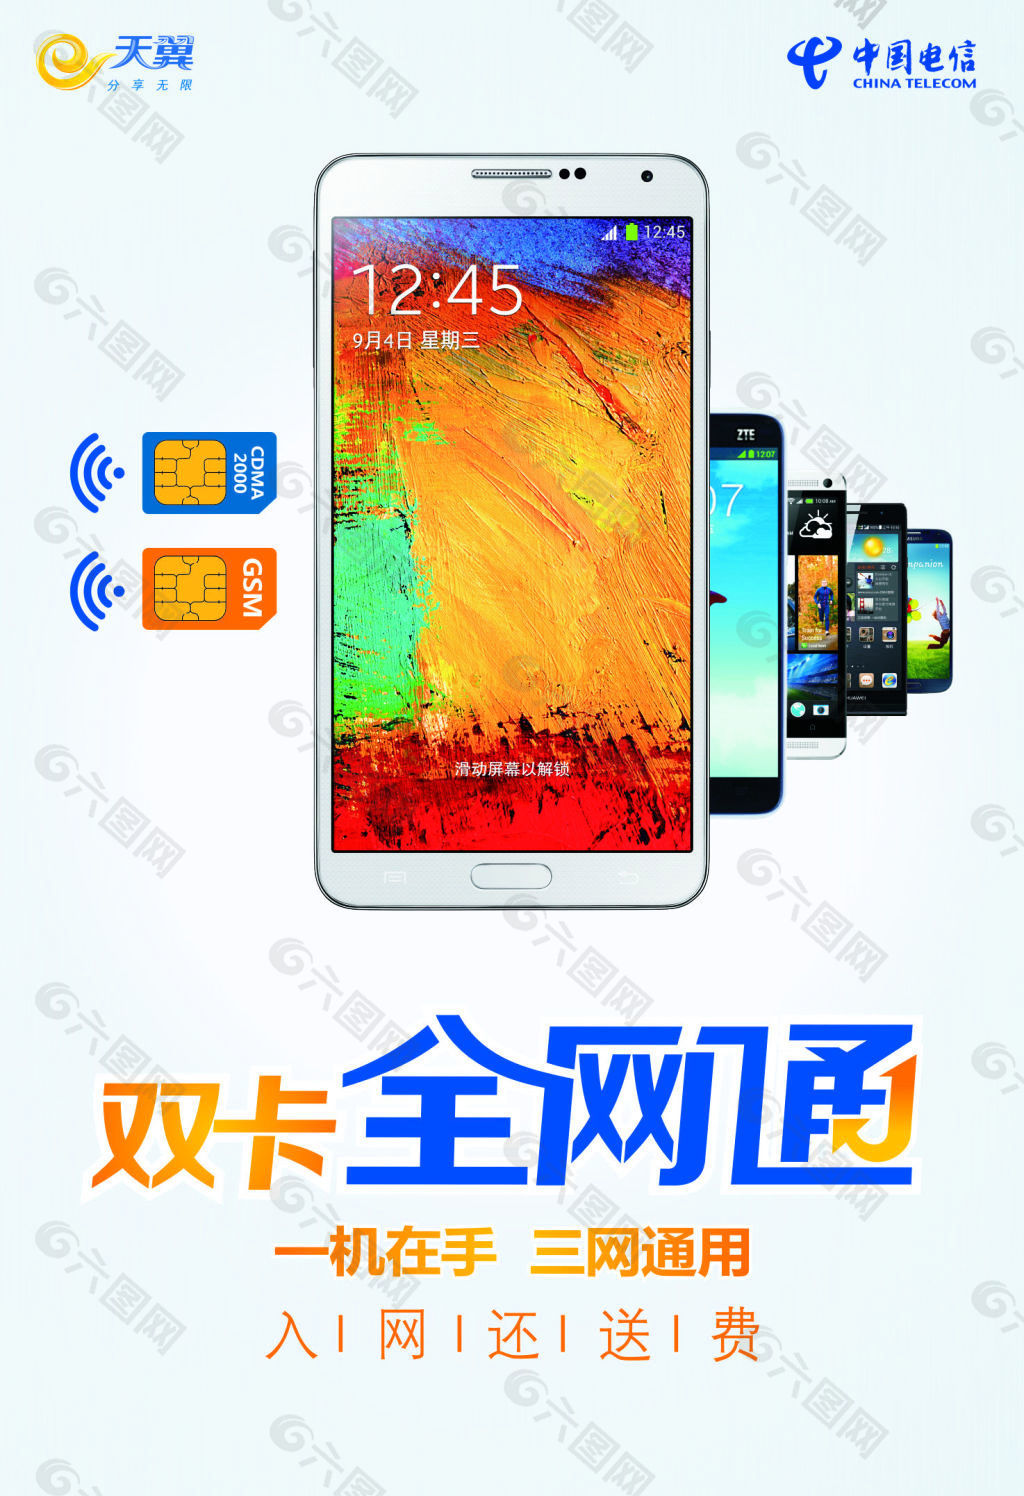 从2G到4G+ 天翼UIM手机卡藏品欣赏|天翼|中国电信_新浪科技_新浪网